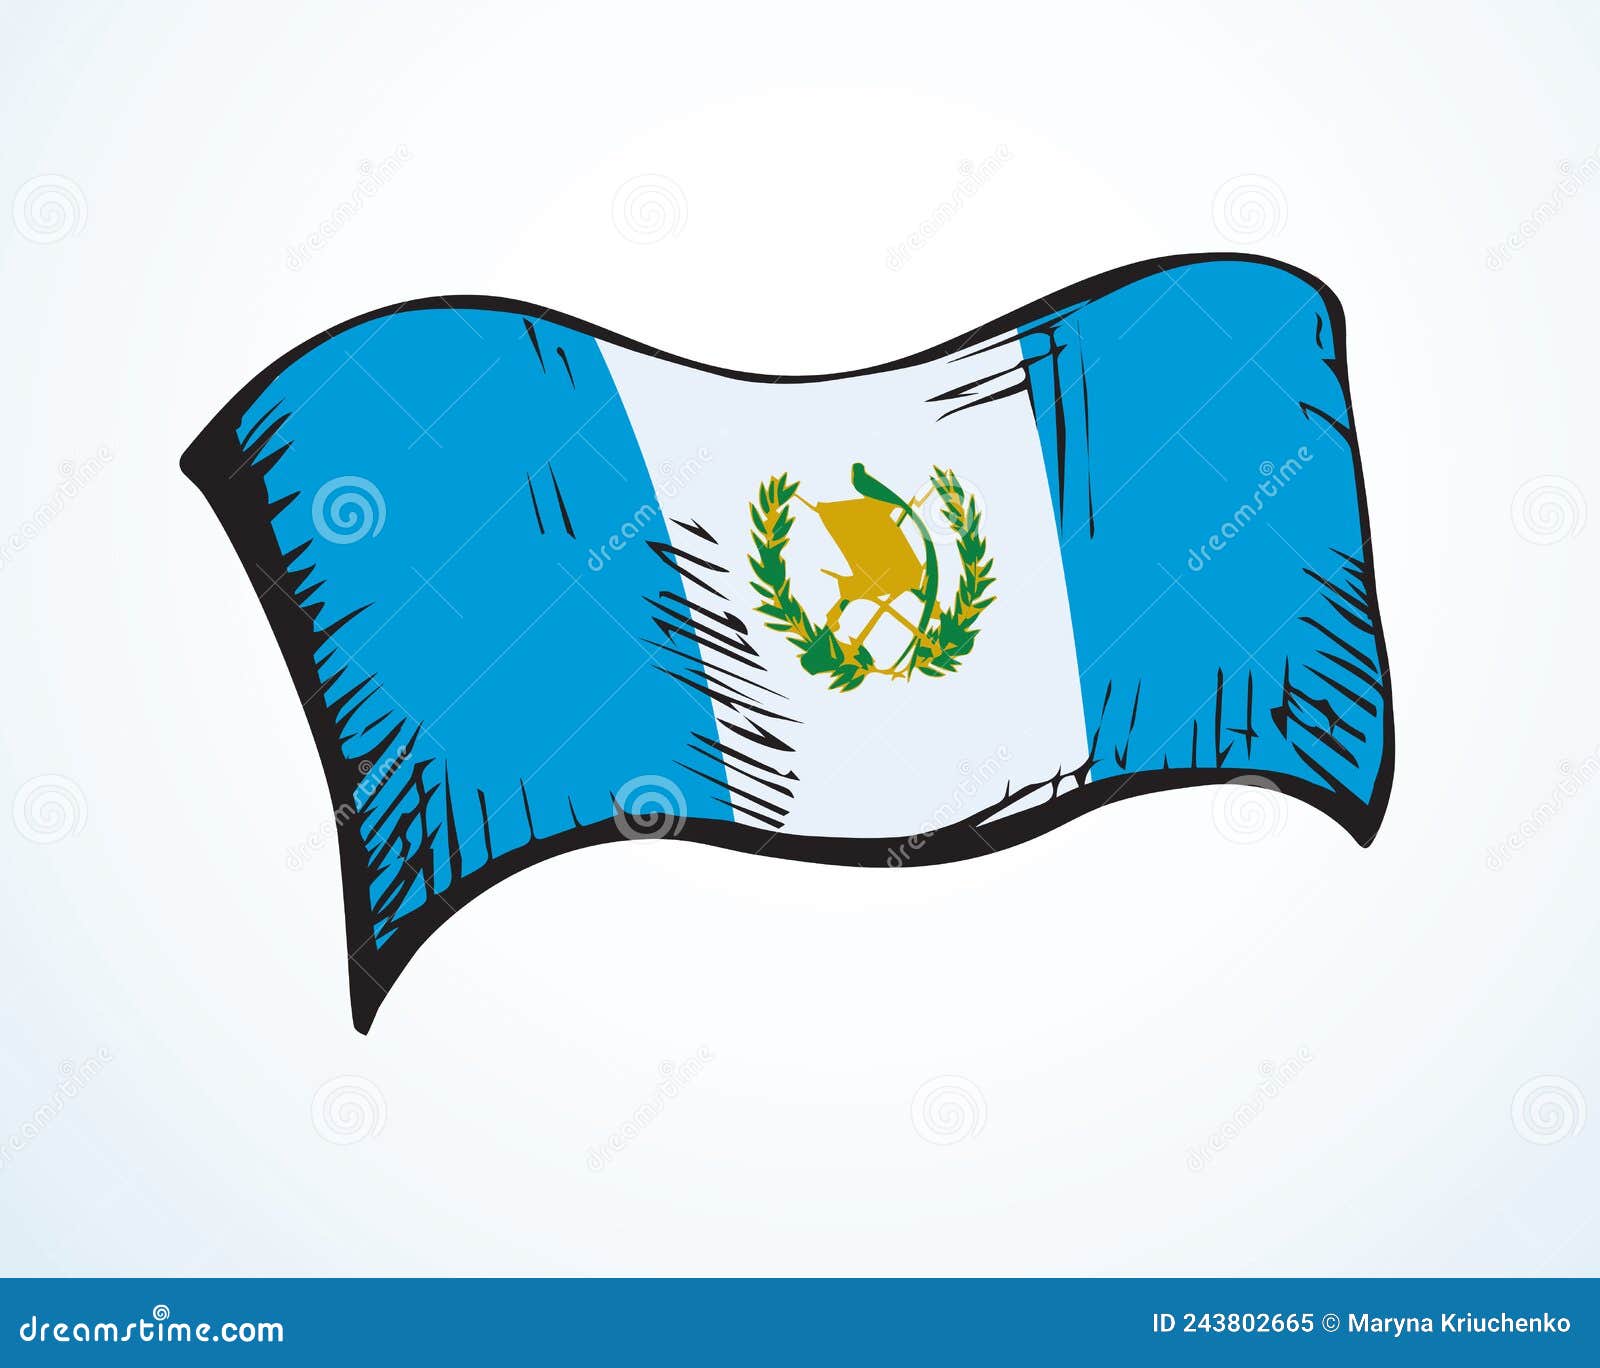 12+ Guatemala Flag Drawing